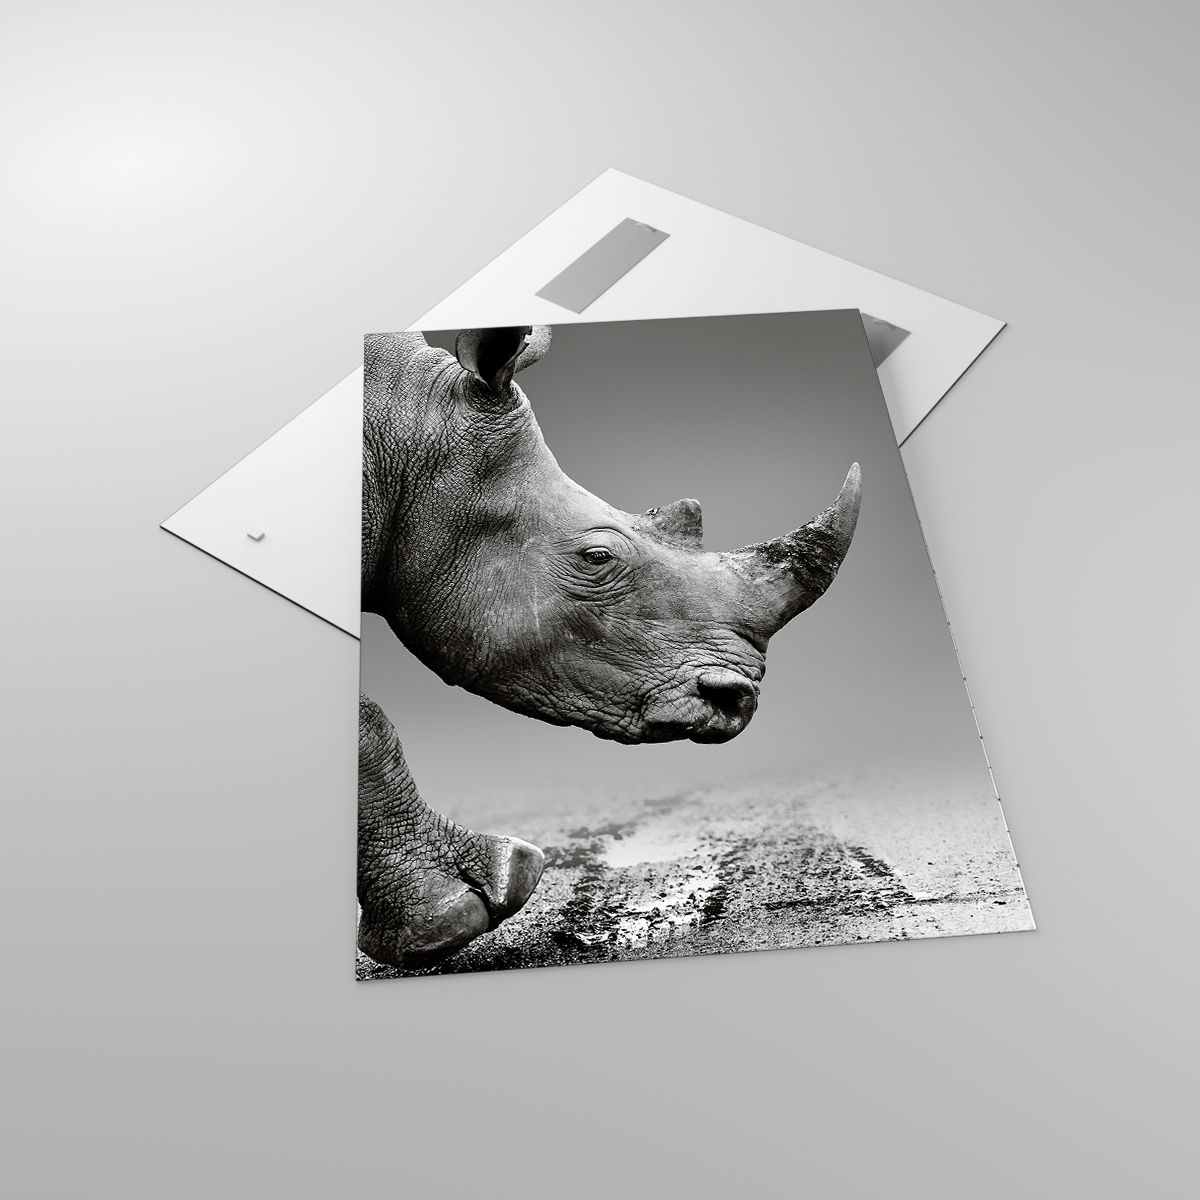 Glasbild Nashorn, Glasbild Tiere, Glasbild Afrika, Glasbild Natur, Glasbild Schwarz Und Weiß